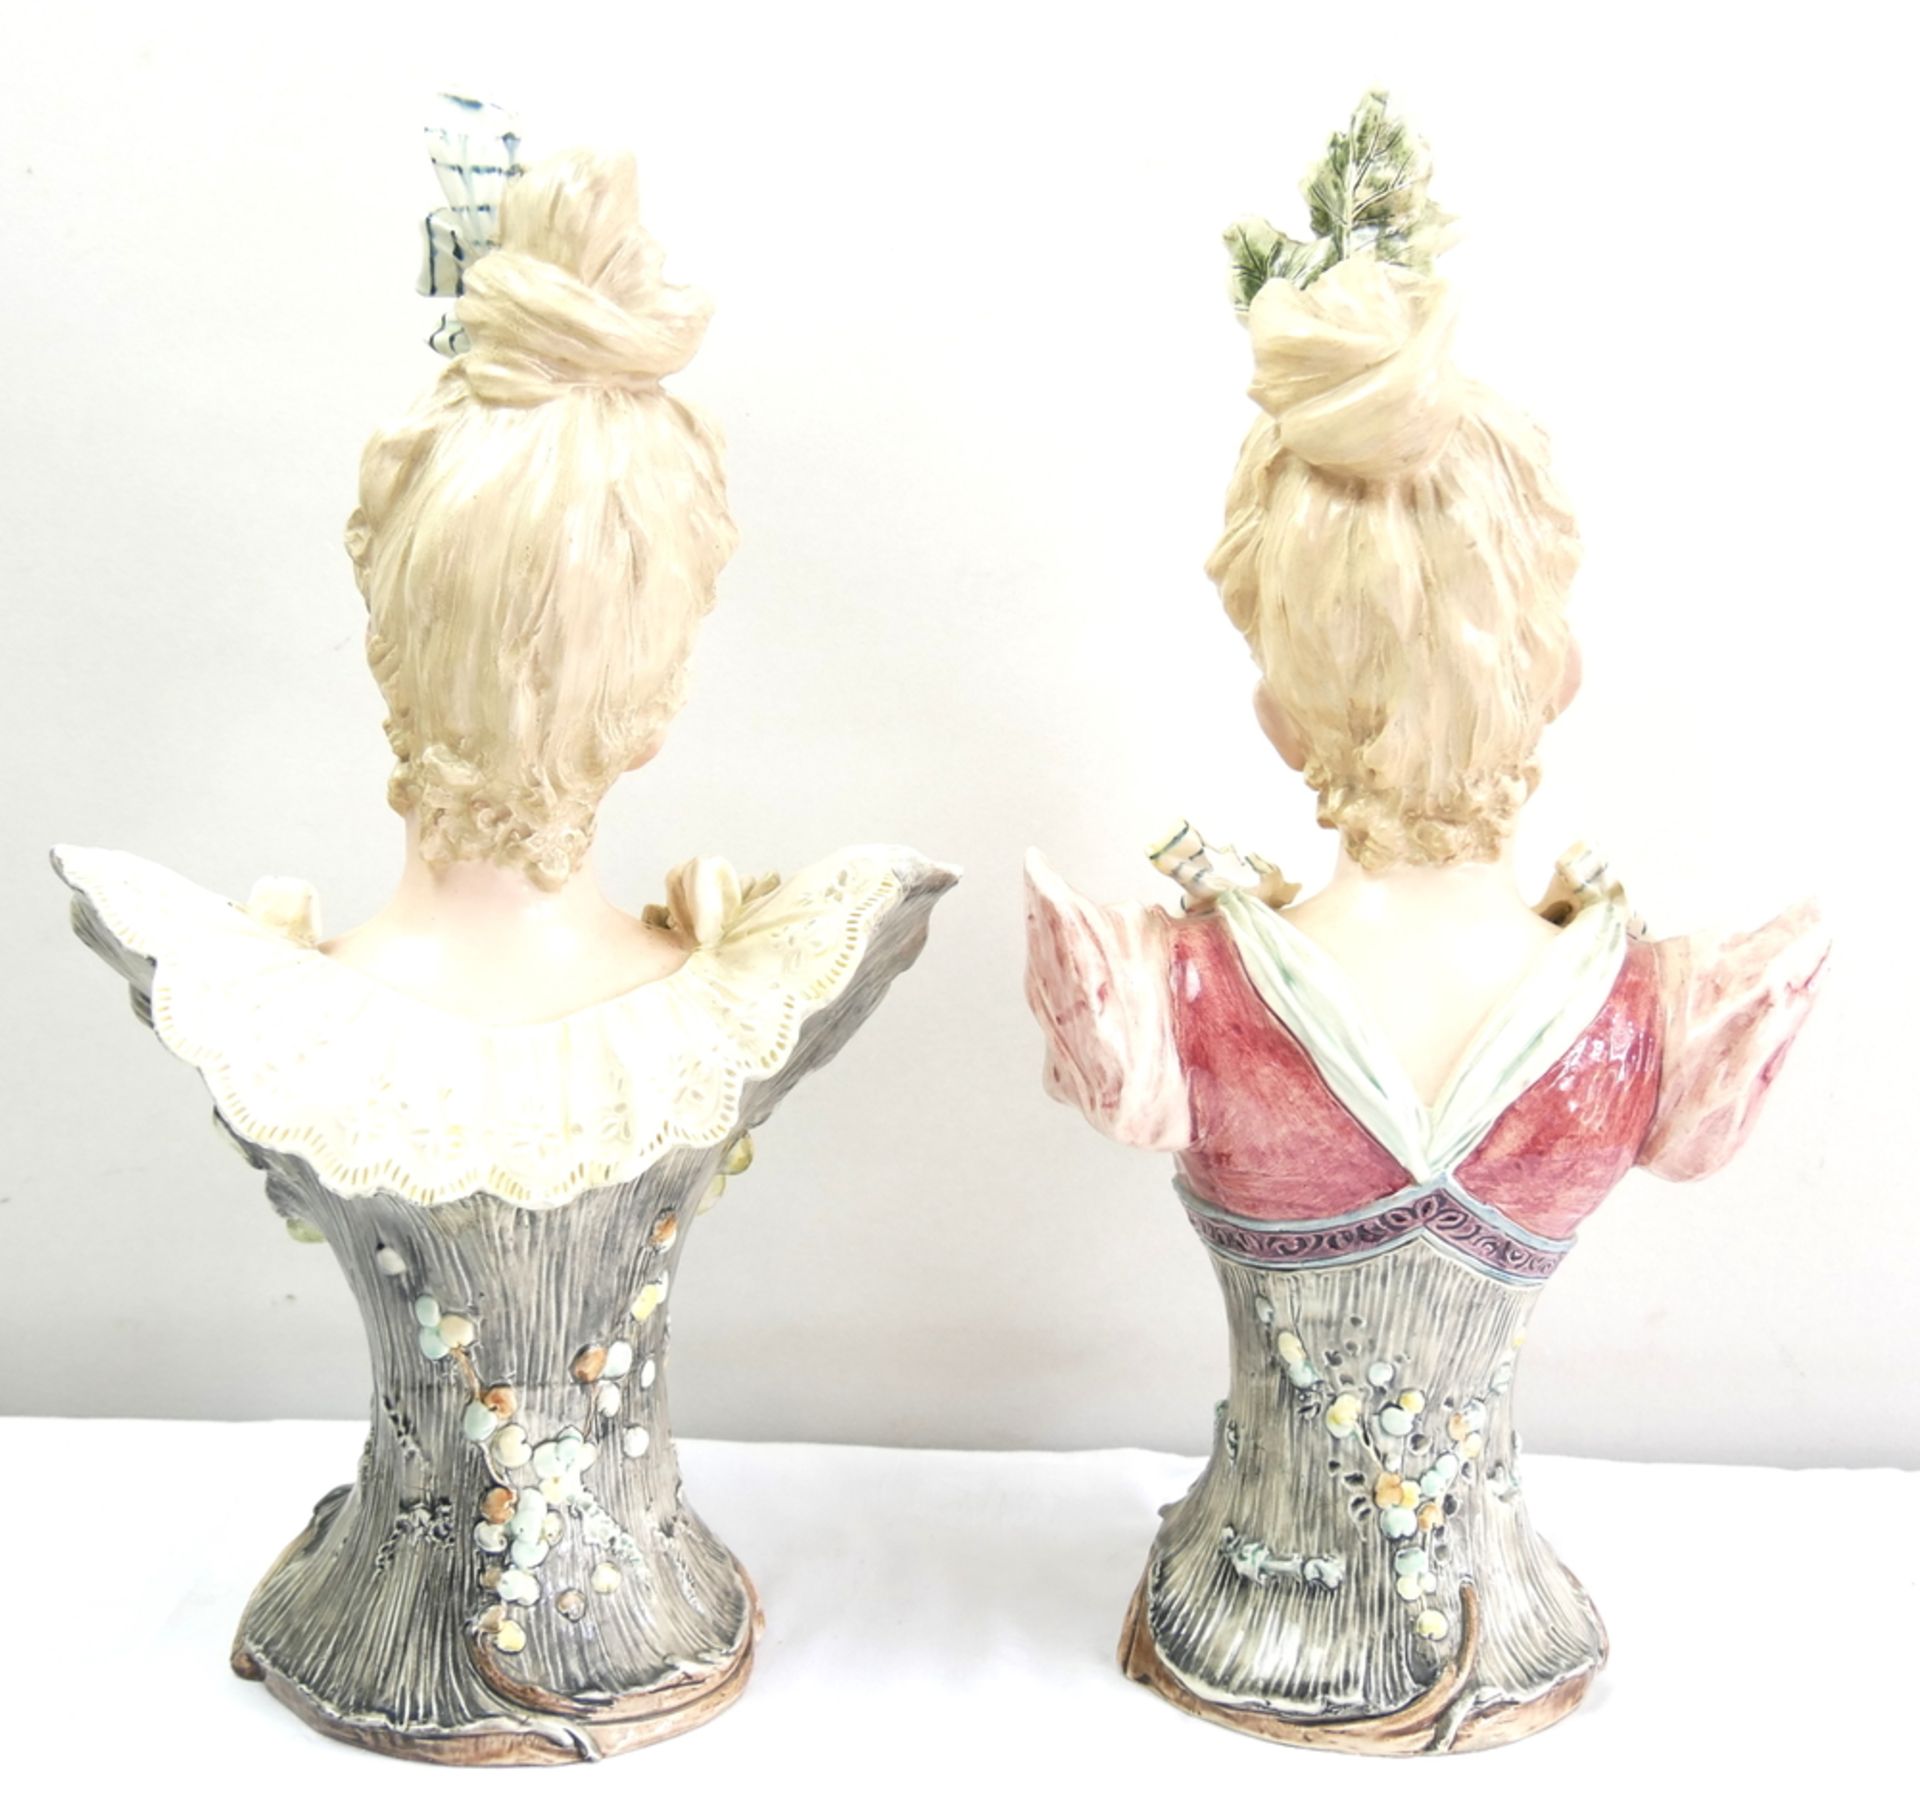 2 alte Jugendstil Porzellanbüsten, Frauen mit Blumen geschmückt, teilweise mit Chips, gemarkt mit - Bild 6 aus 9